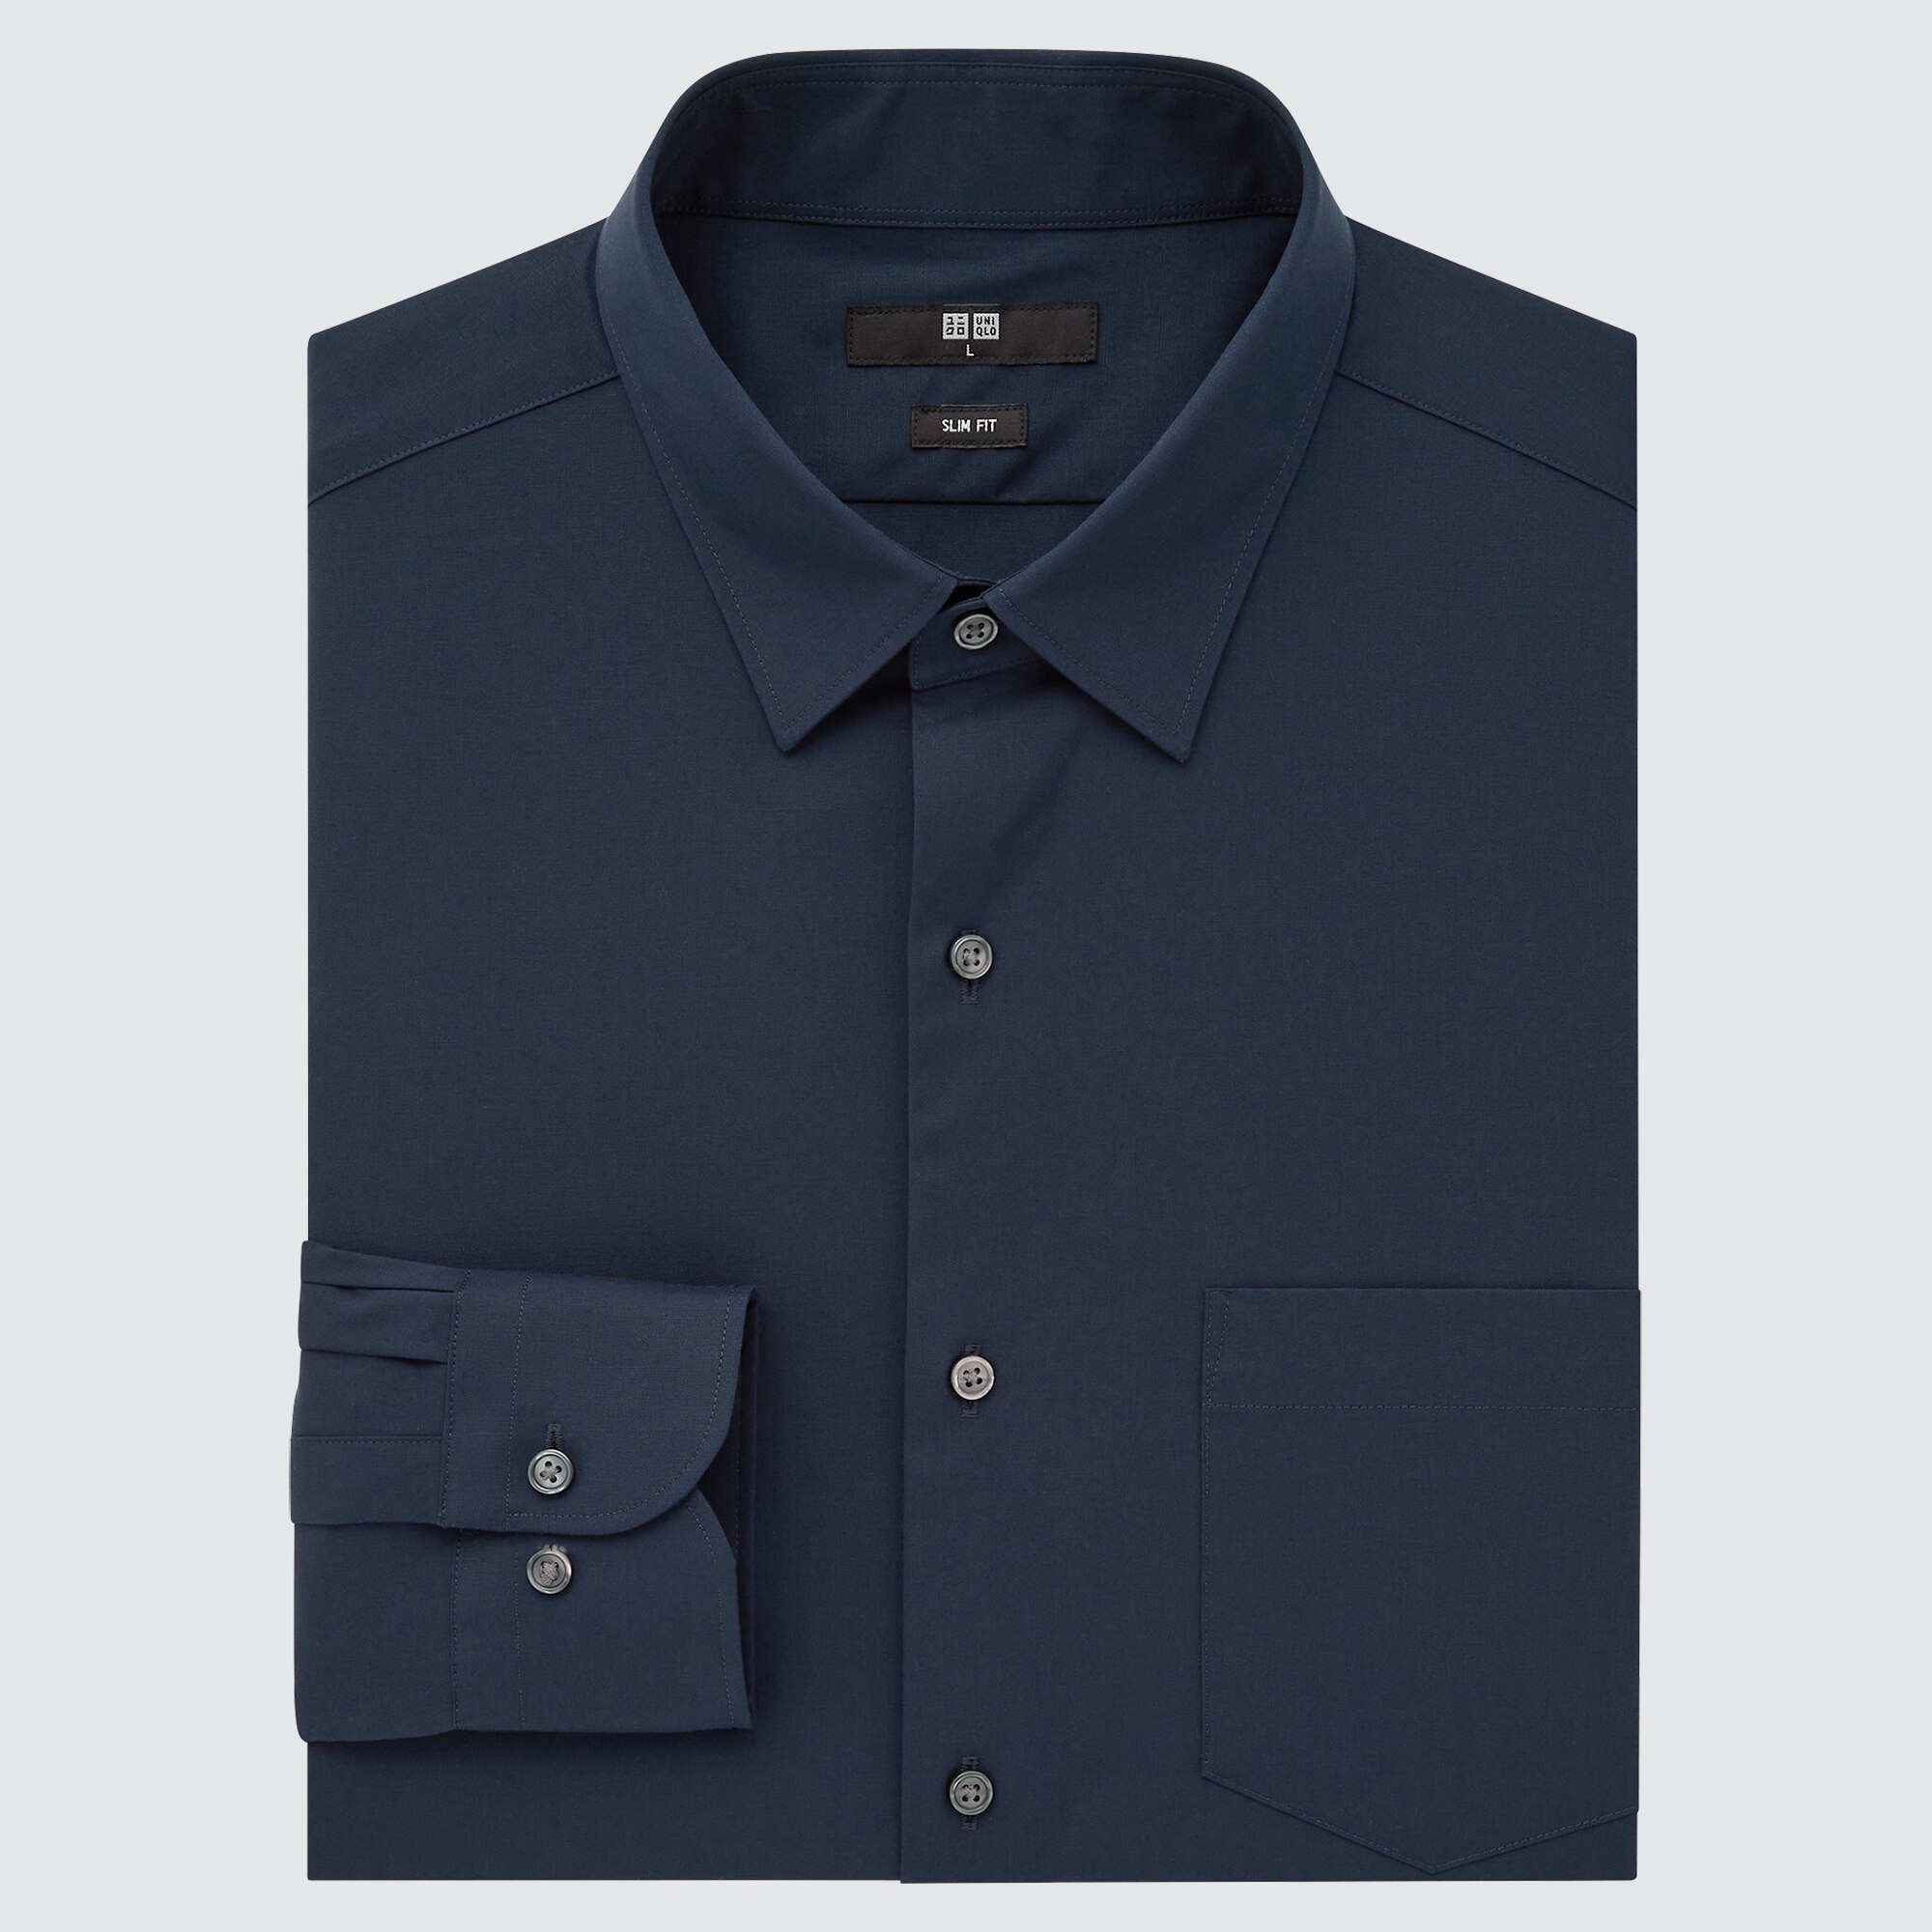 ユニクロ公式 ファインクロスストレッチスリムフィットブロードシャツ レギュラーカラー 長袖